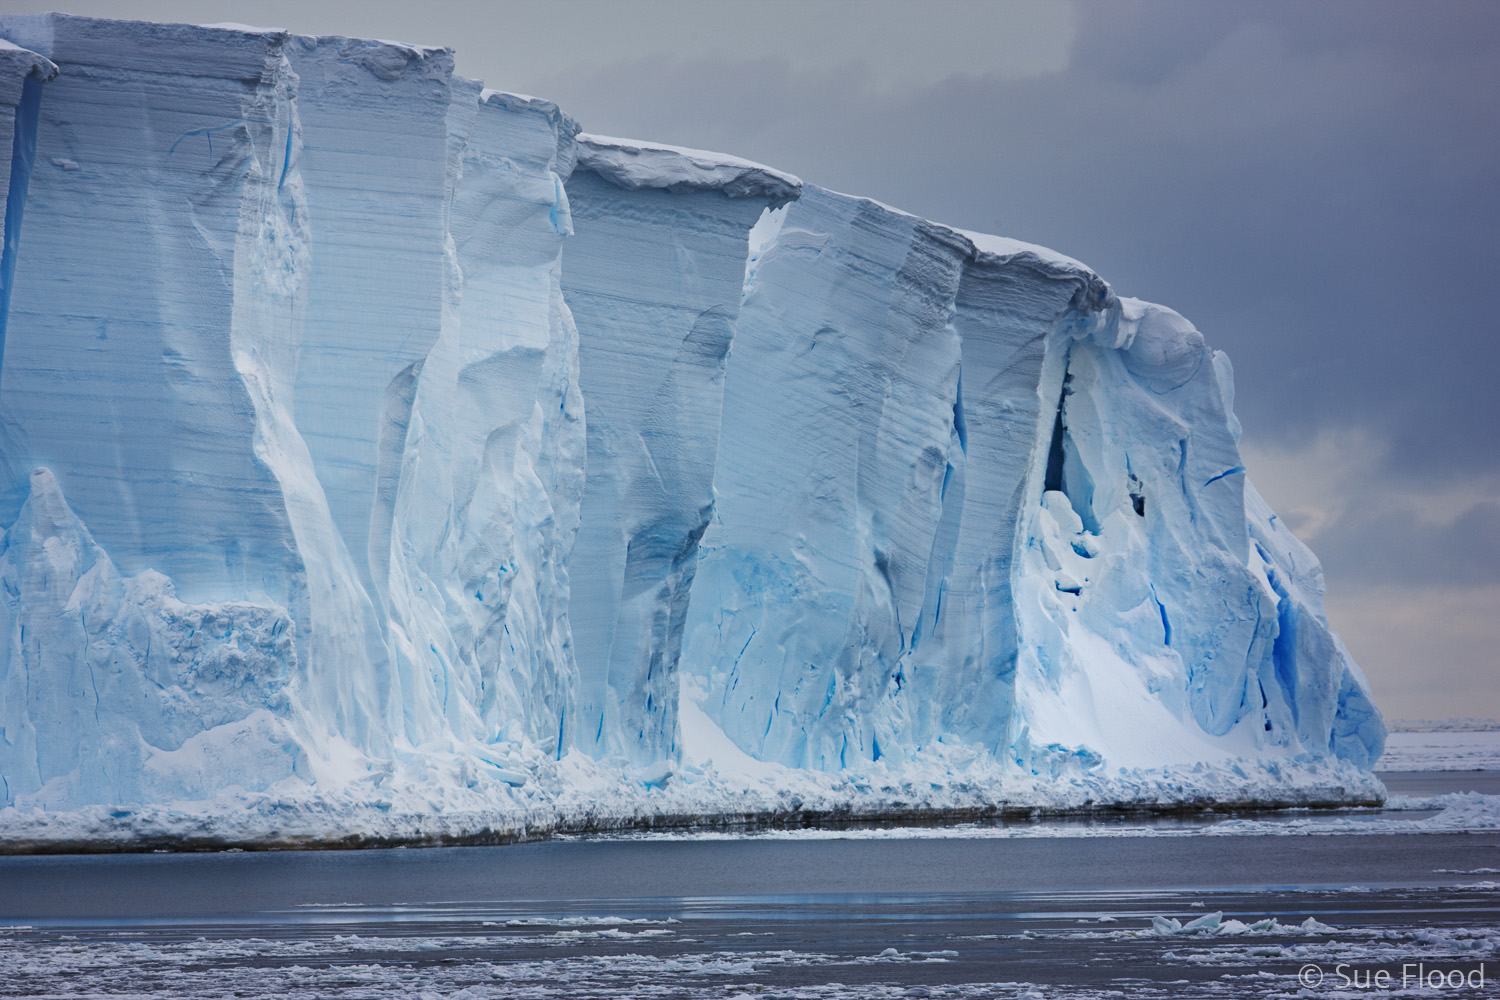 Ross Ice Shelf, Antarctica